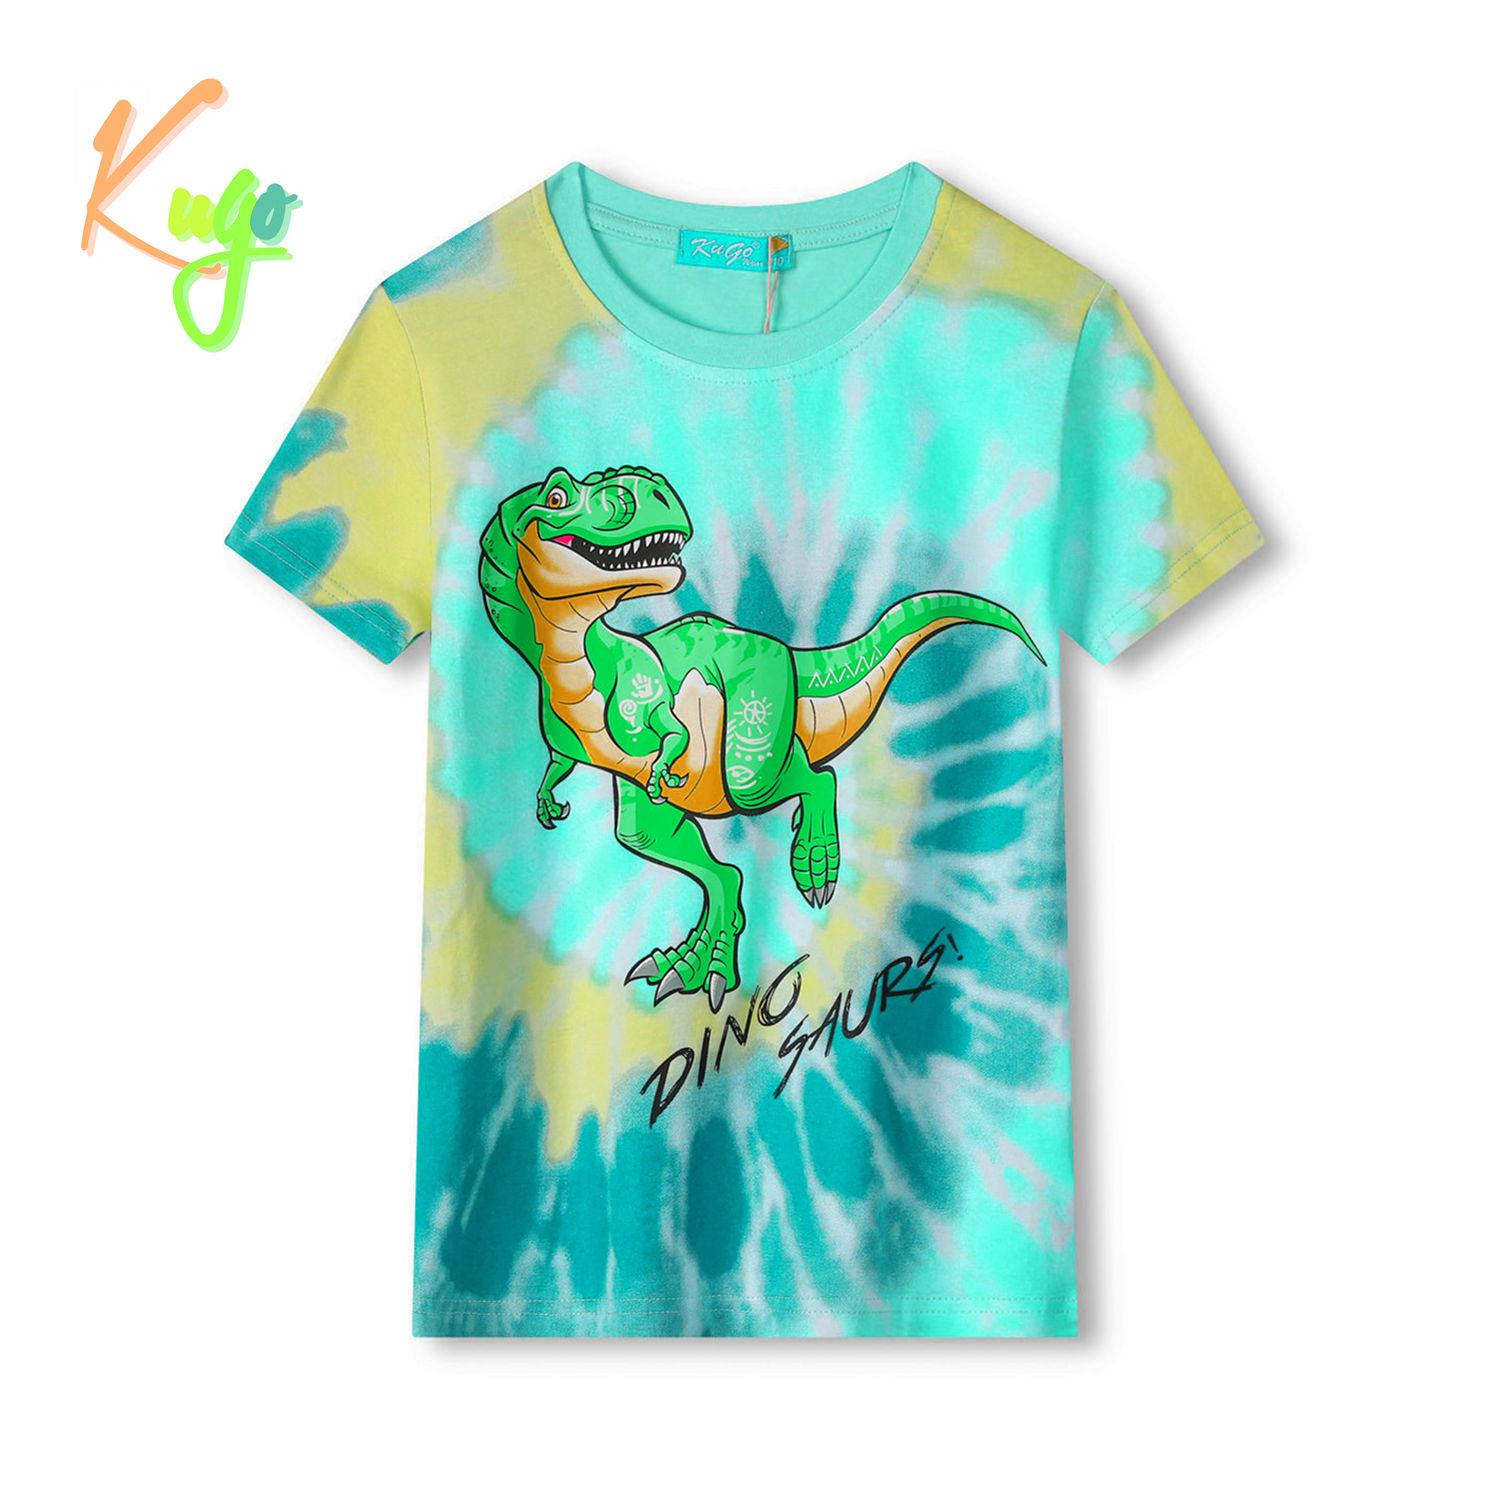 Chlapecké tričko - KUGO FC0301, tyrkysová / oranžový dinosaurus Barva: Tyrkysová, Velikost: 98